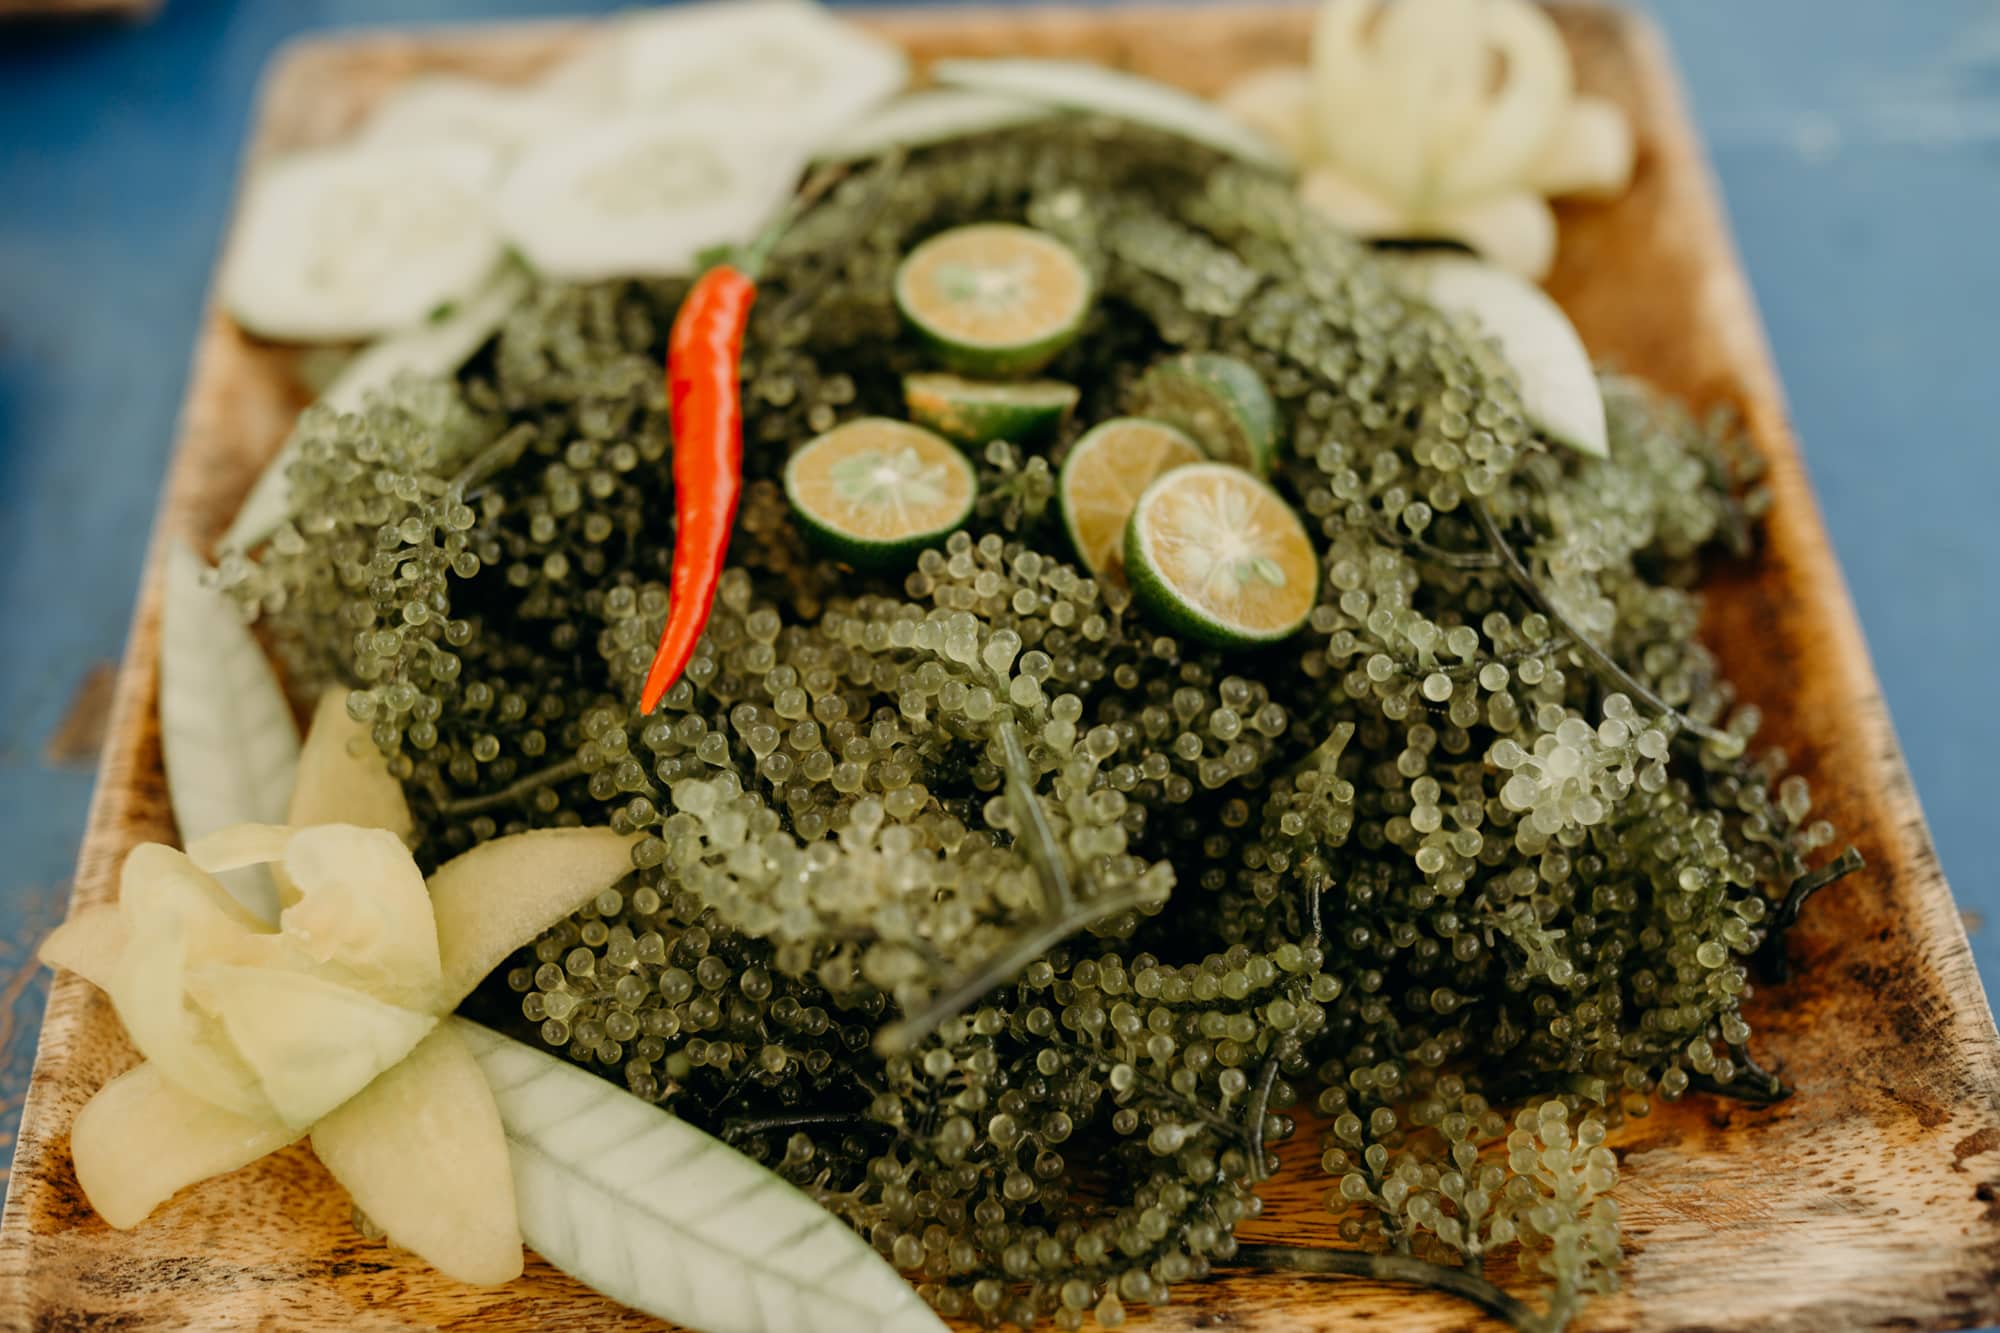 seaweed lato salad